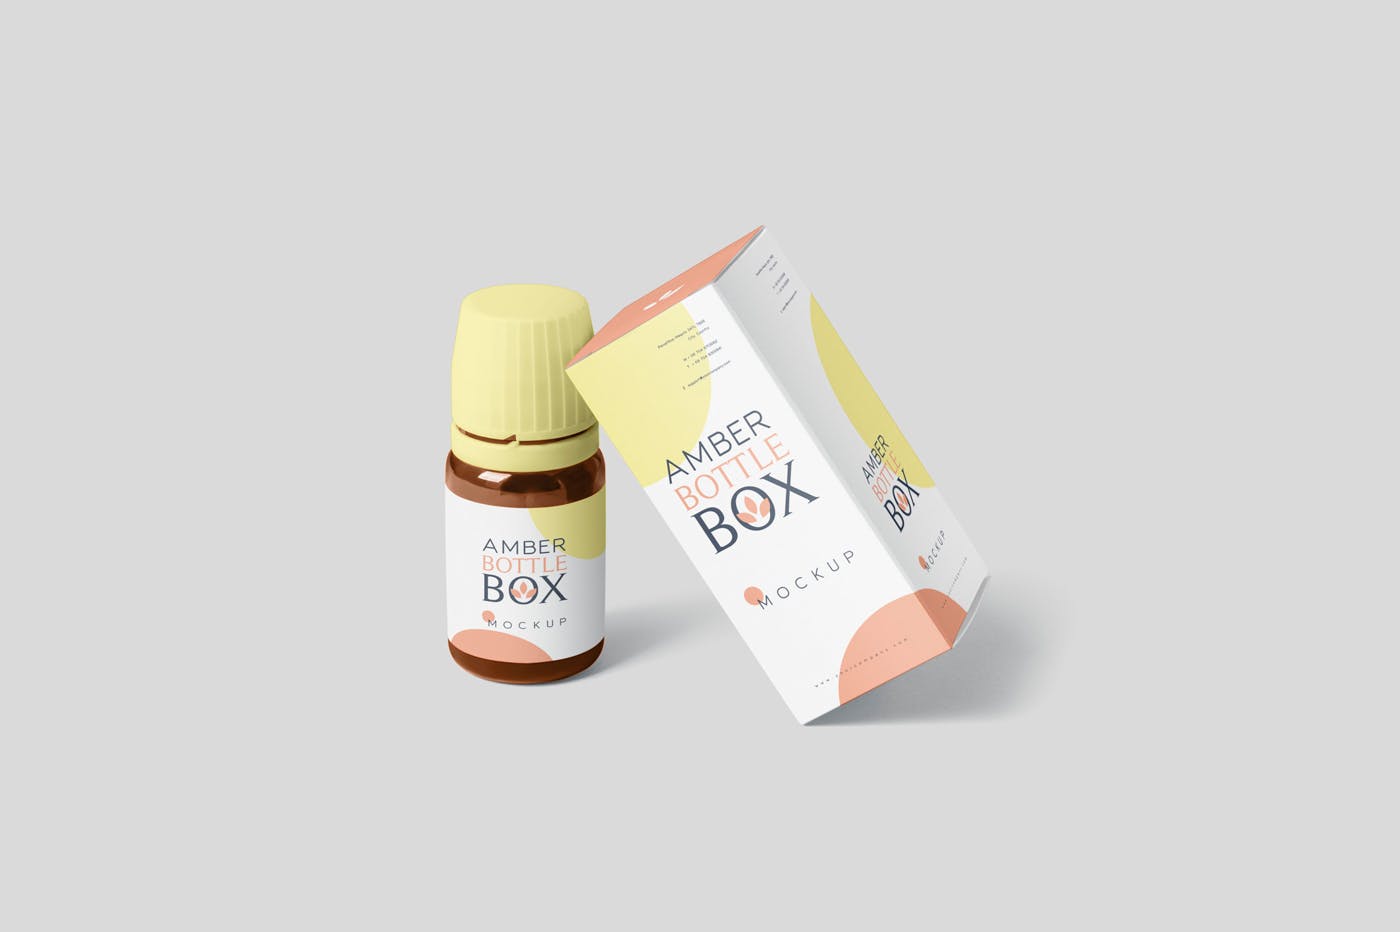 药物瓶&包装纸盒设计图16图库精选模板 Amber Bottle Box Mockup Set插图(4)